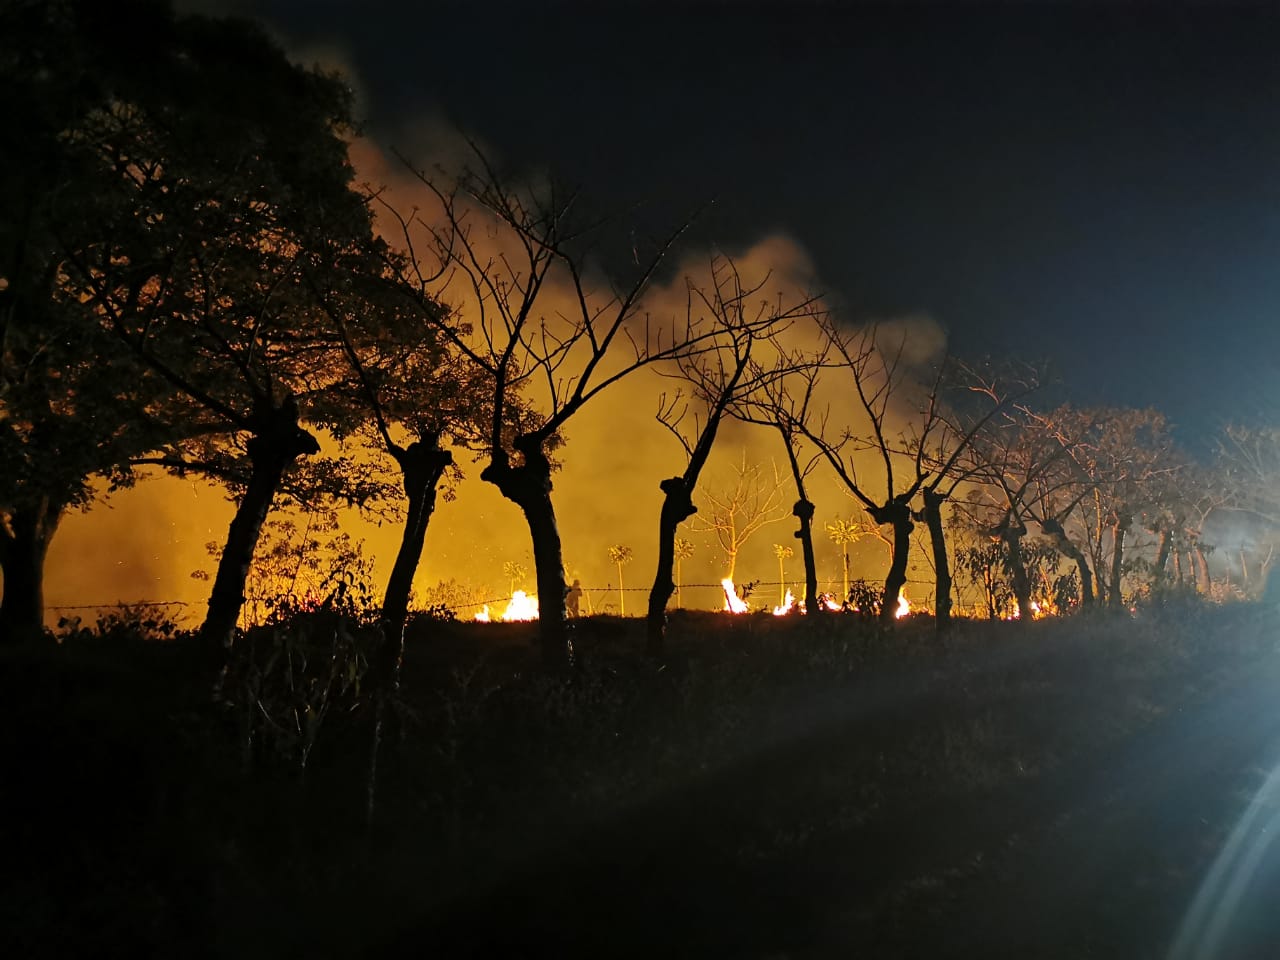 Incendios provocados aumentan tensión en territorio indígena; jerarcas de Gobierno intervienen